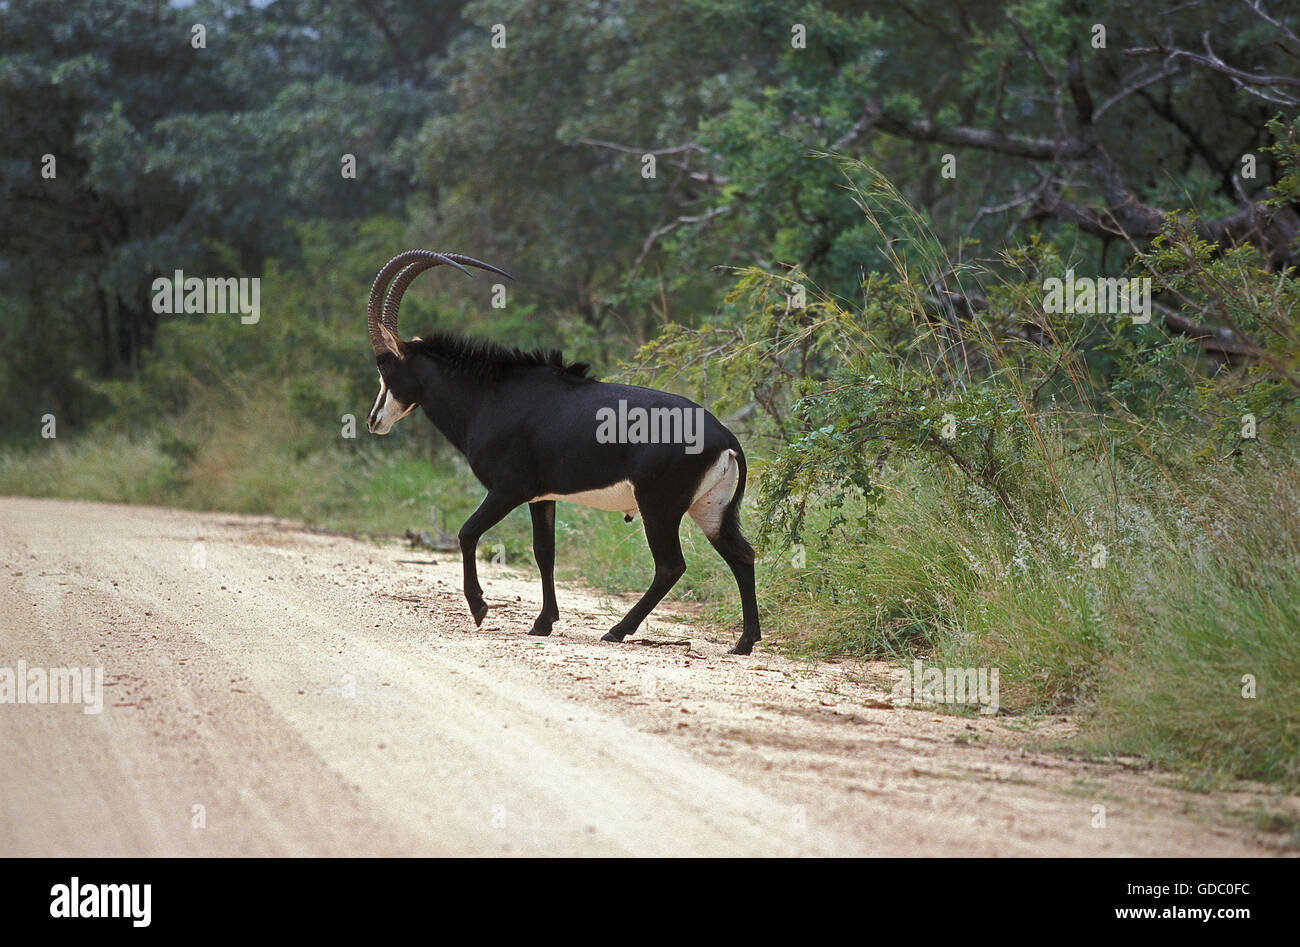 Hippotrague noir, Hippotragus niger, homme crossing Trail, Afrique du Sud Banque D'Images